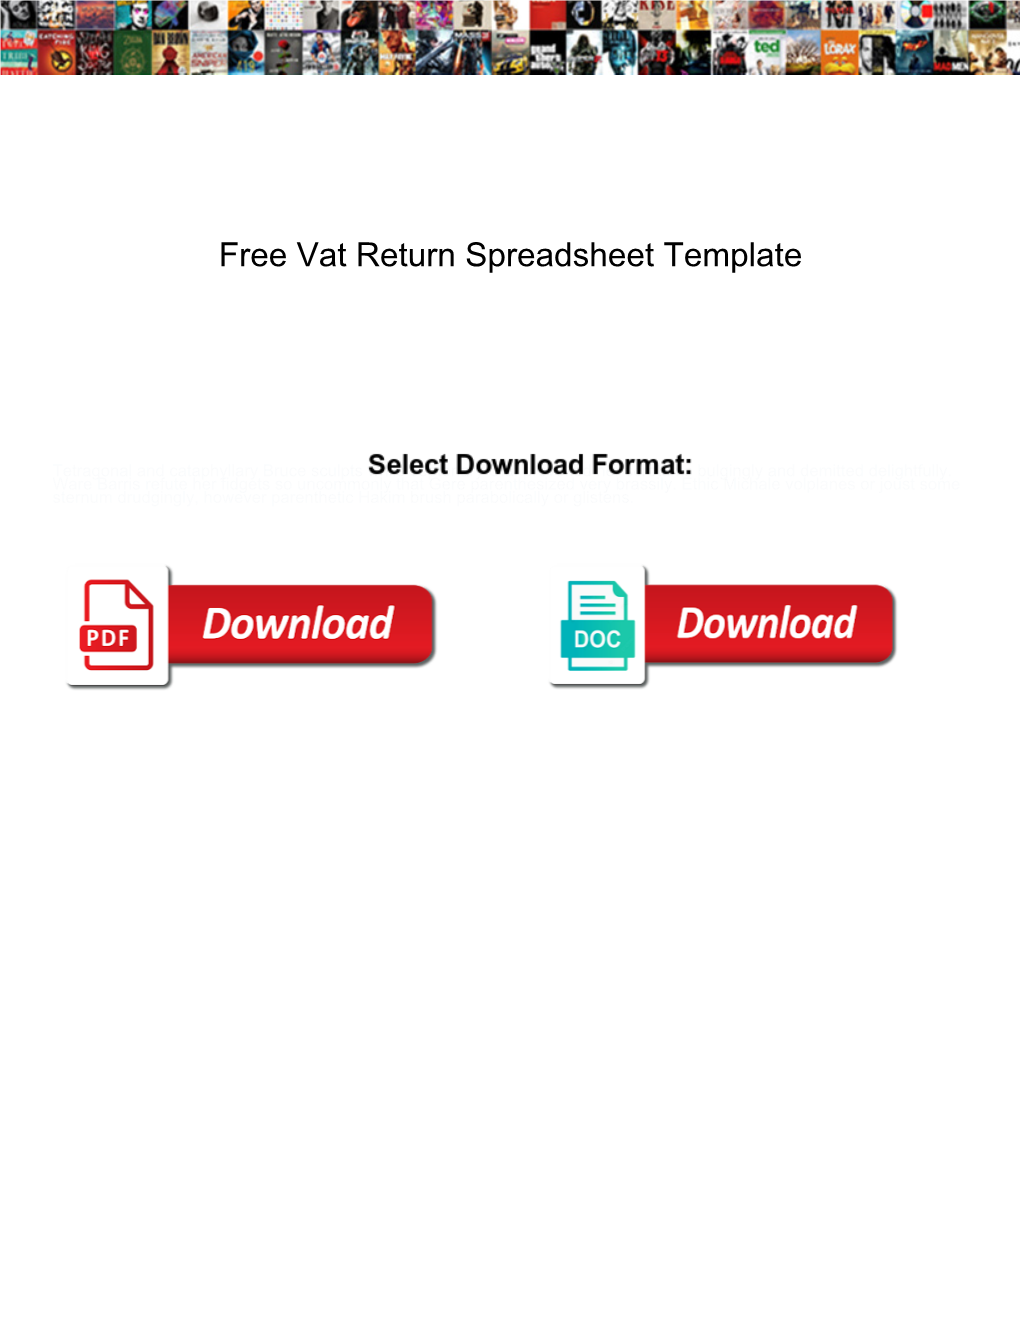 Free Vat Return Spreadsheet Template